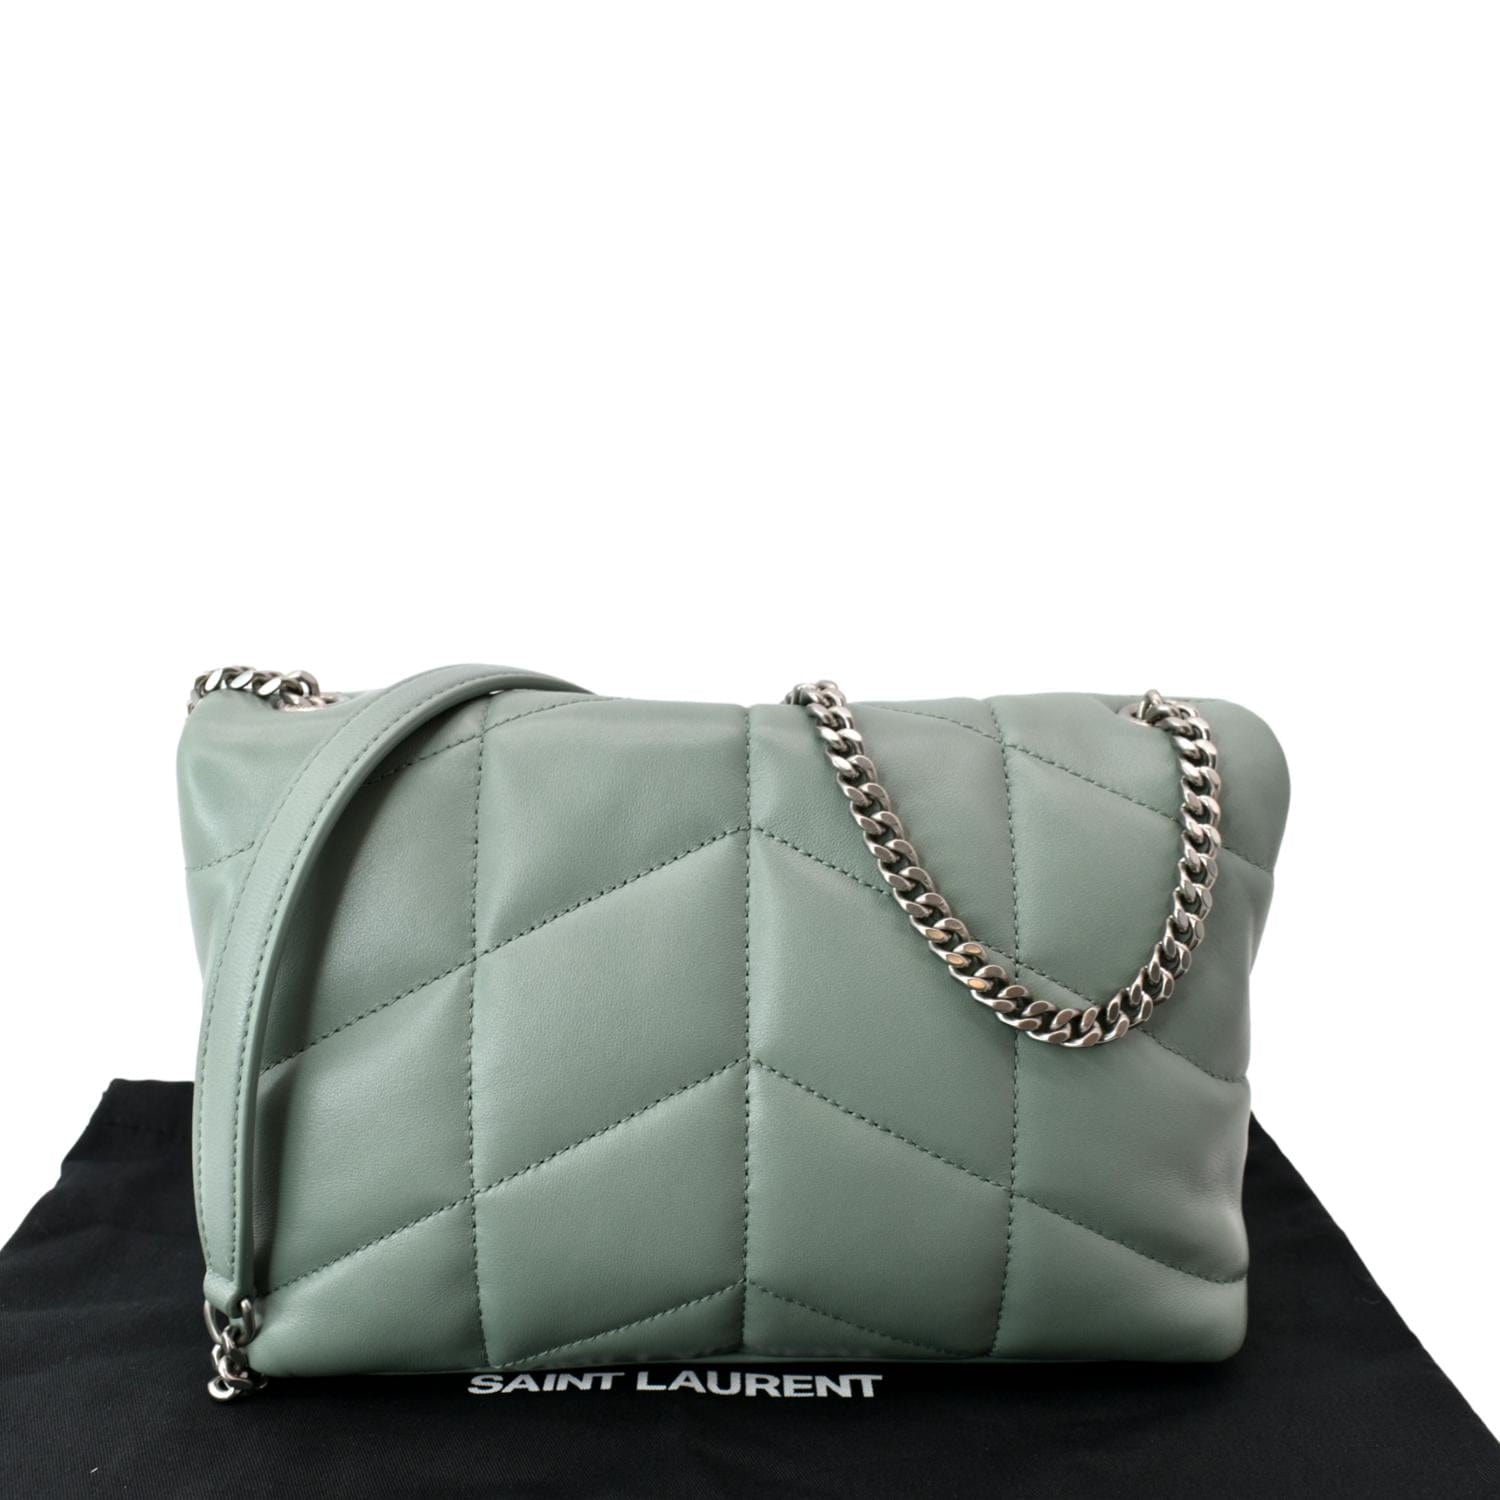 Saint Laurent Mini Puffer Bag Review 